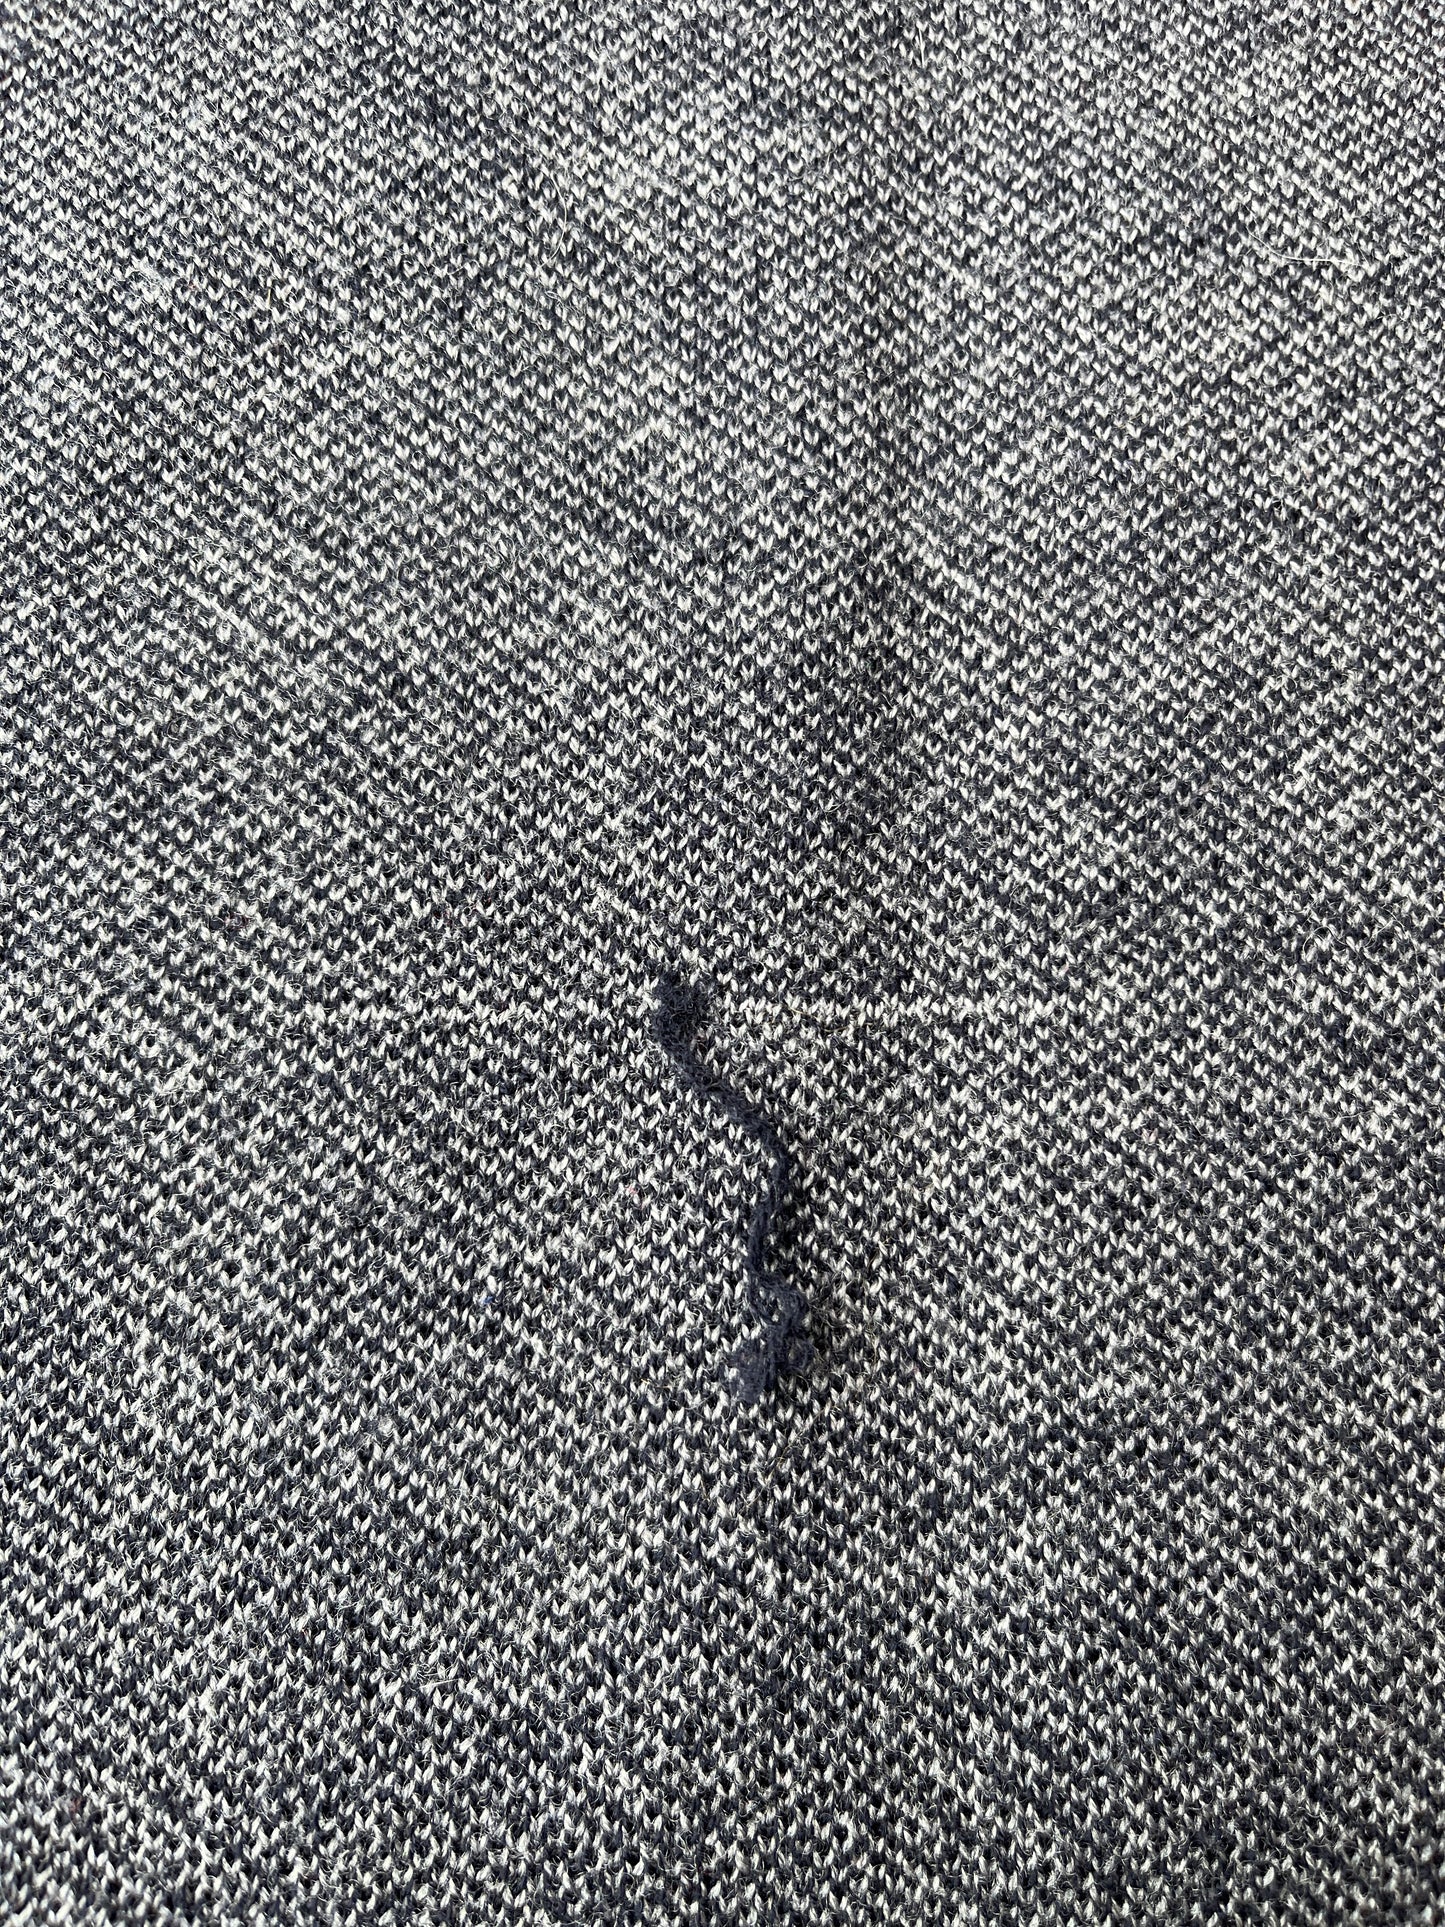 Chandail en pure laine mérinos grise à motifs bleus (S)